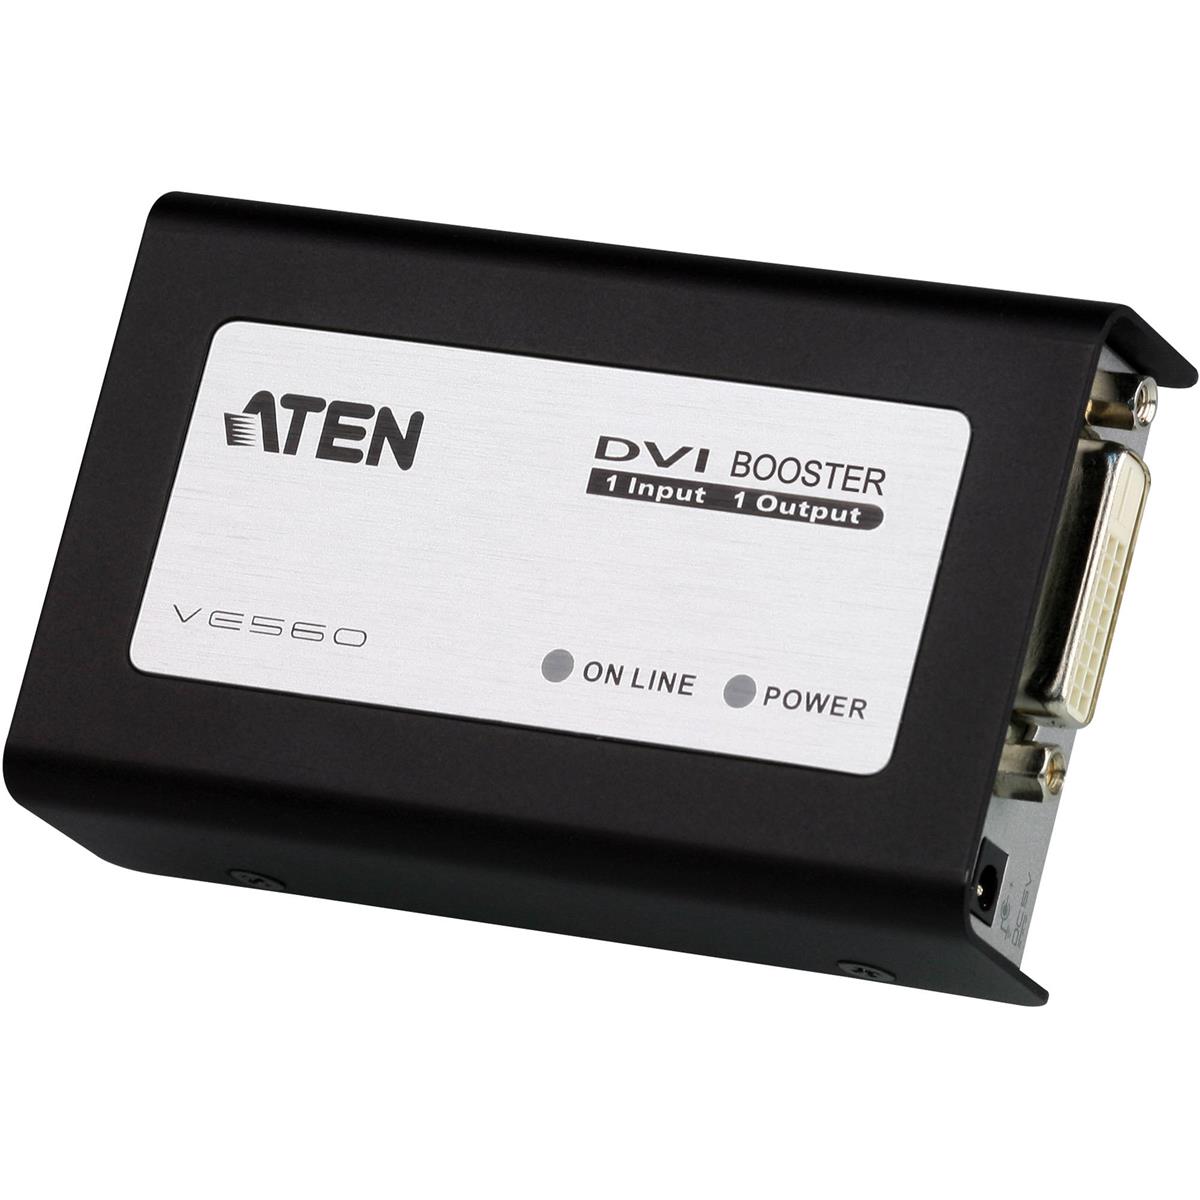 Image of Aten VE560 DVI Booster